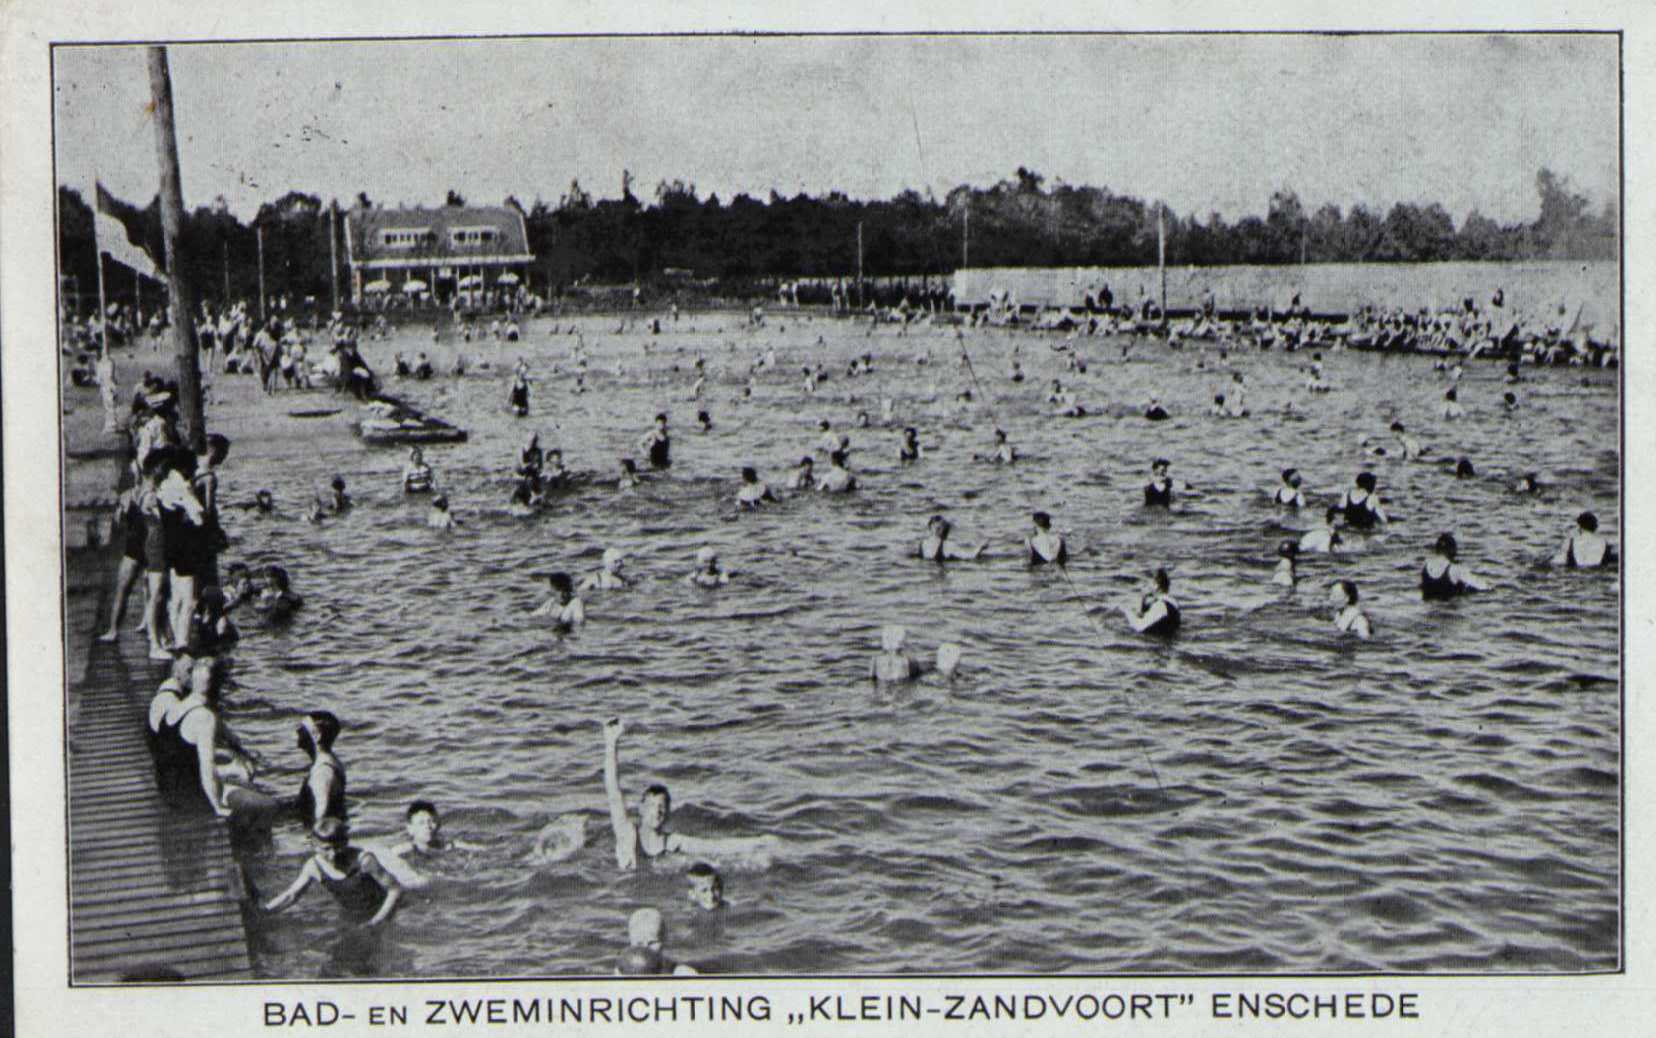 Klein-Zandvoort-Enschede.jpg